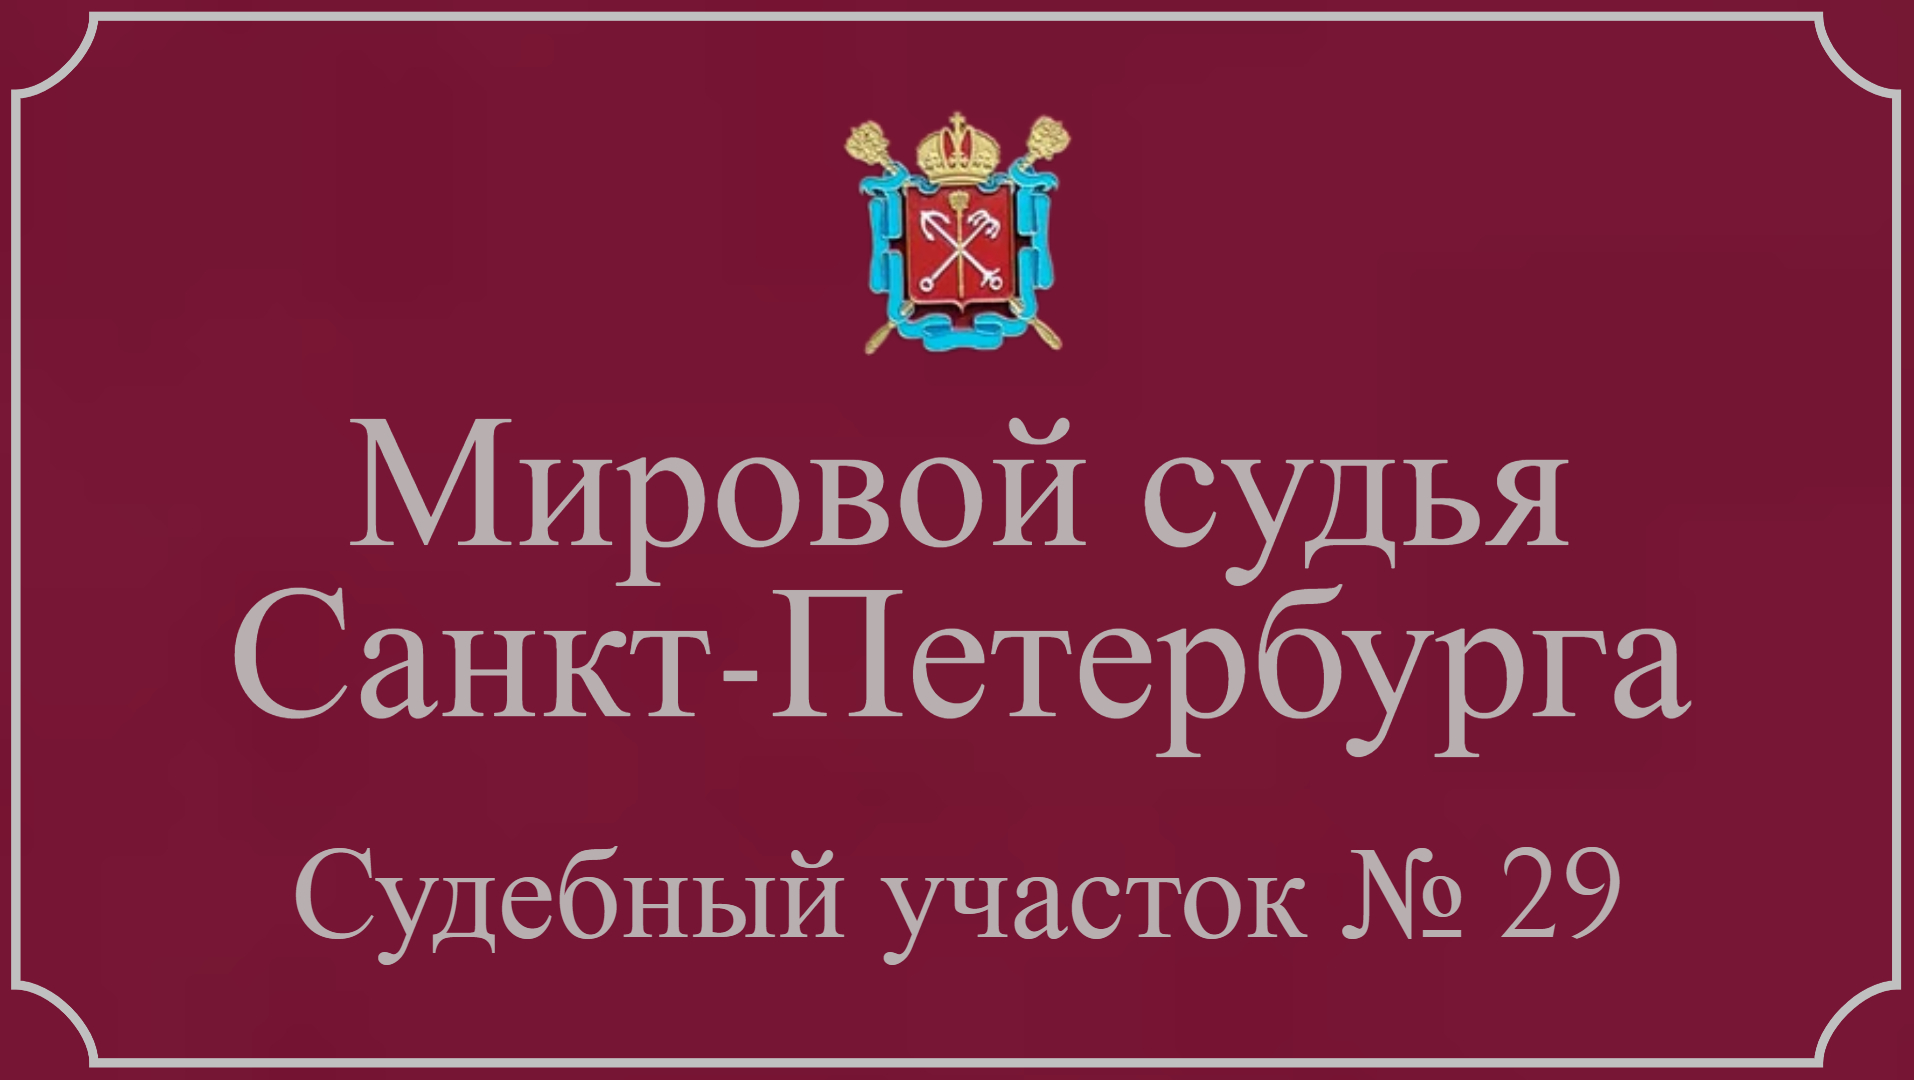 Информация по 29 судебному участку в Санкт-Петербурге.